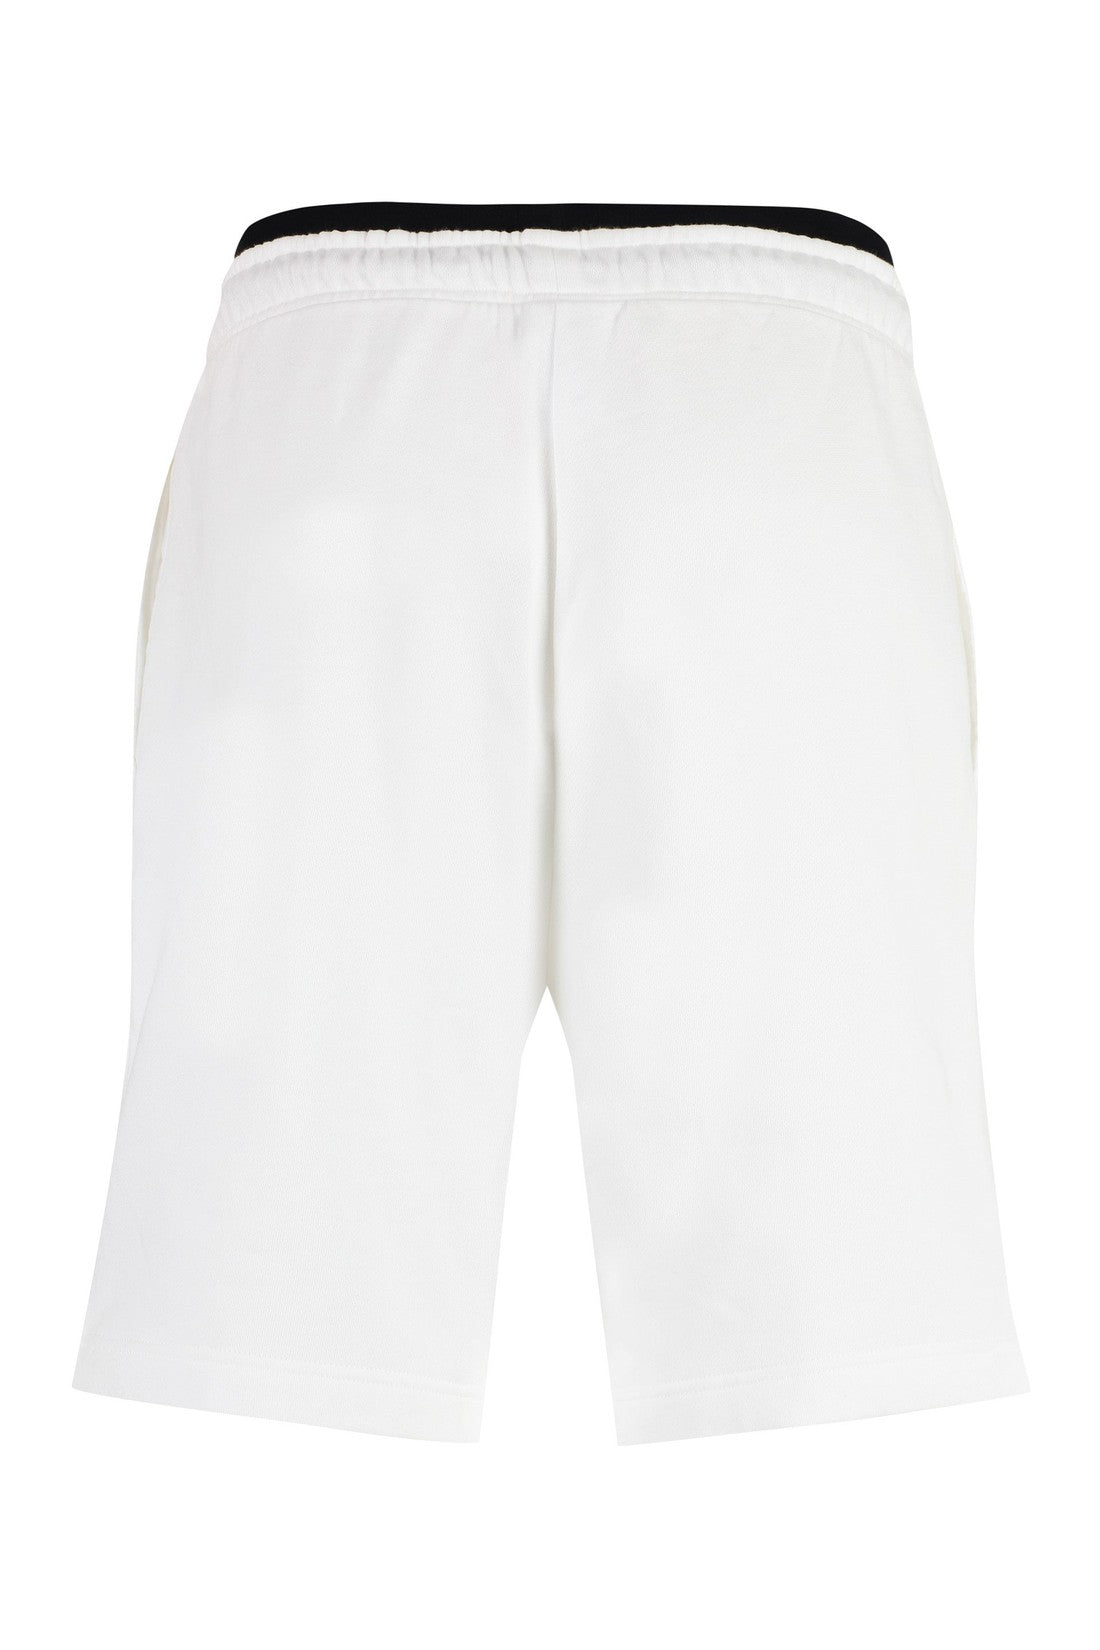 BOSS-OUTLET-SALE-Fleece shorts-ARCHIVIST